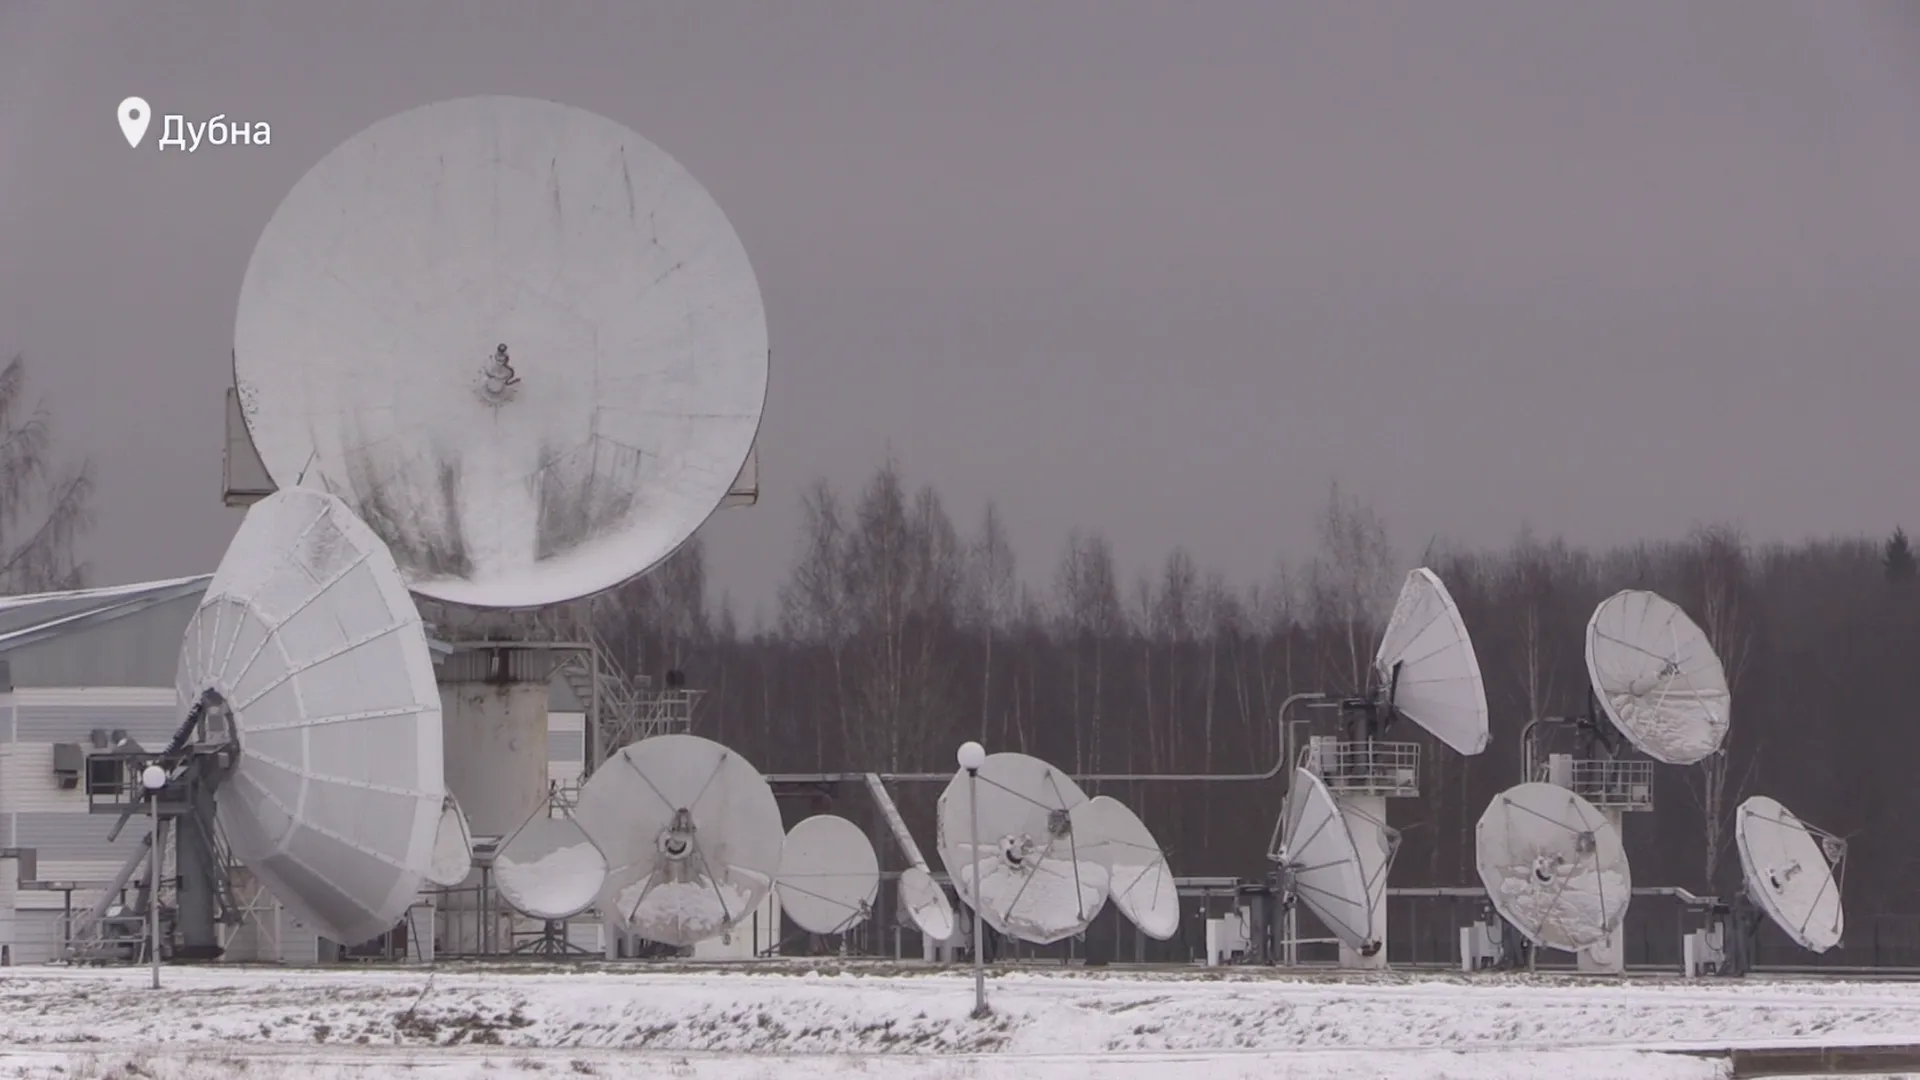 Два спутника связи готовят к запуску в Дубне. Они обеспечат доступ в интернет для всей страны